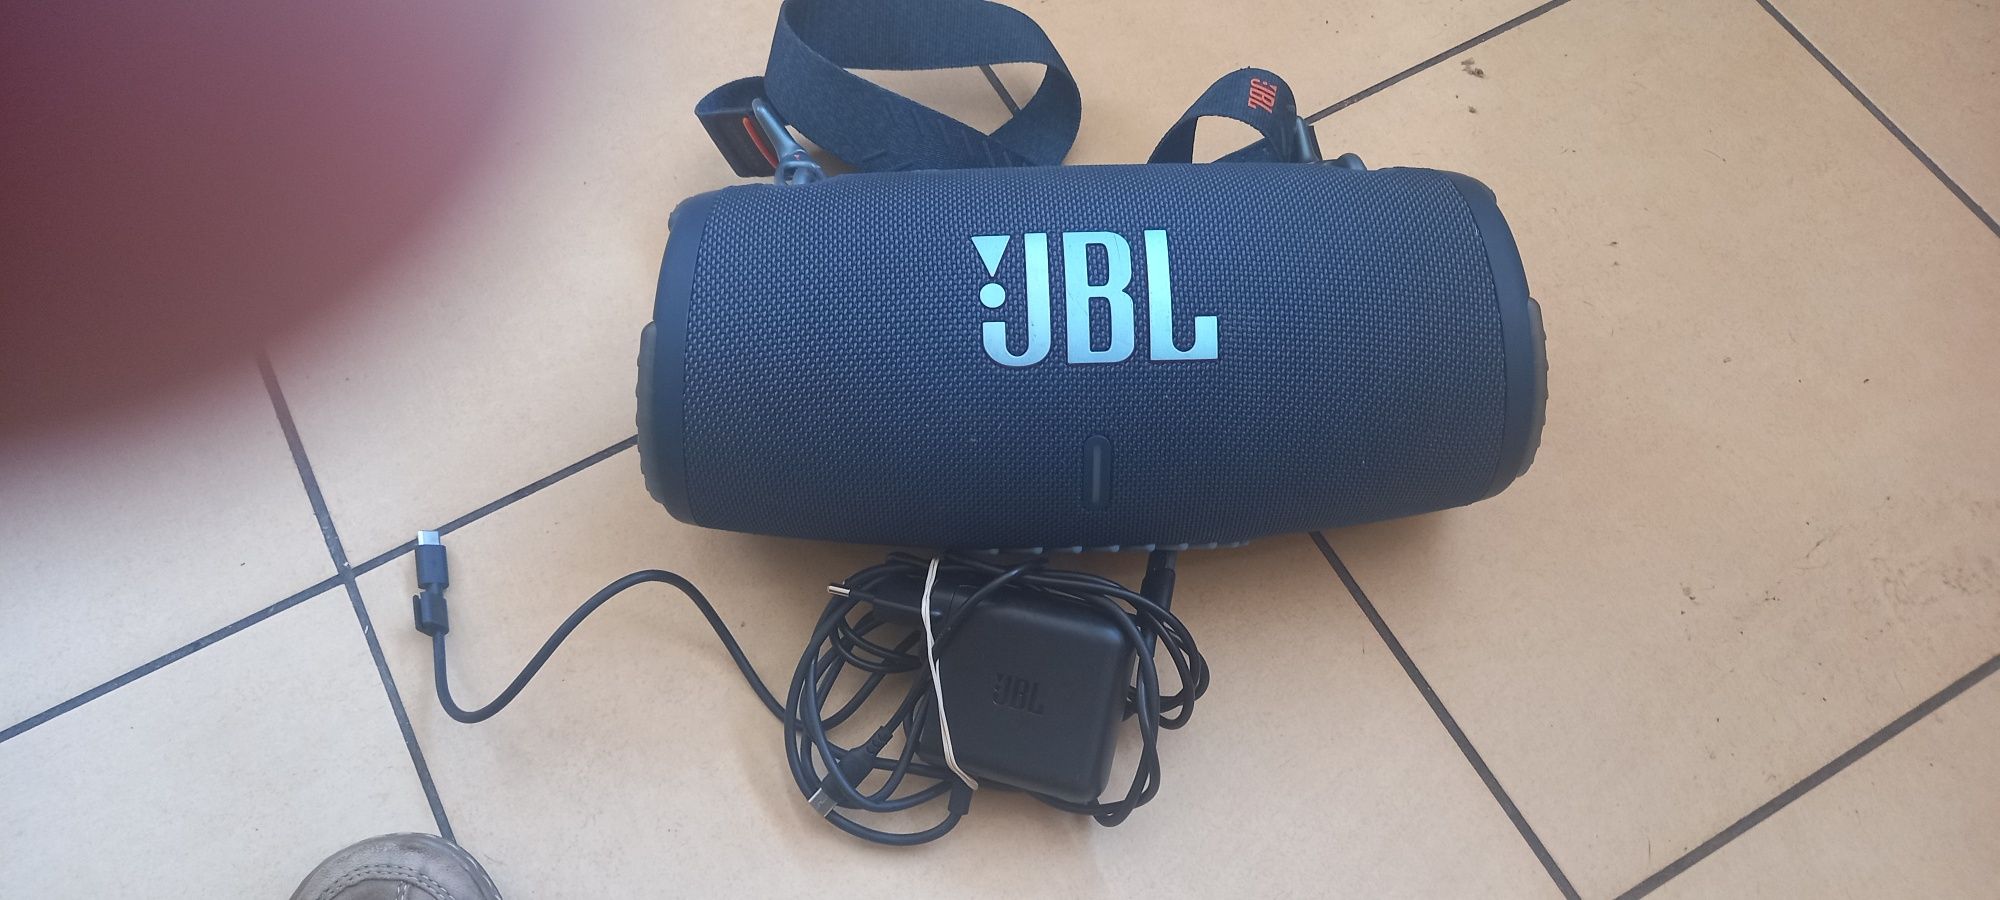 głośnik mobilny bluetooth JBL Extreeme 3 stan idealny